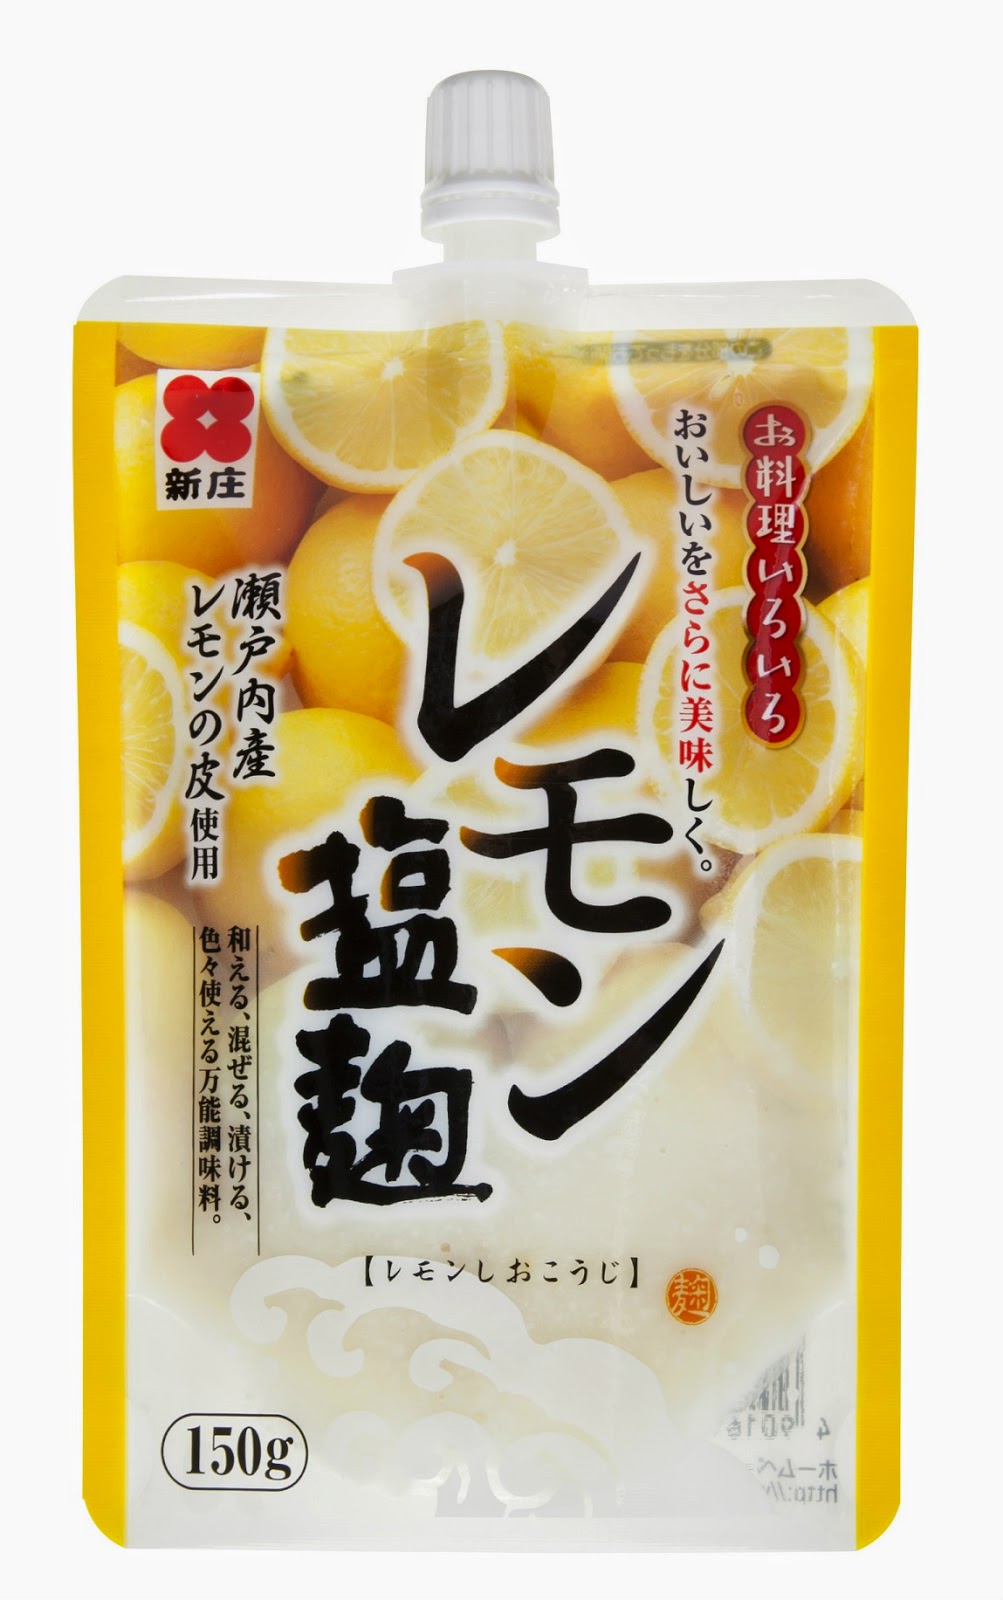 新庄みそ レモン塩麹 スパウトタイプ 150g 10個セット 瀬戸内産レモンの皮使用